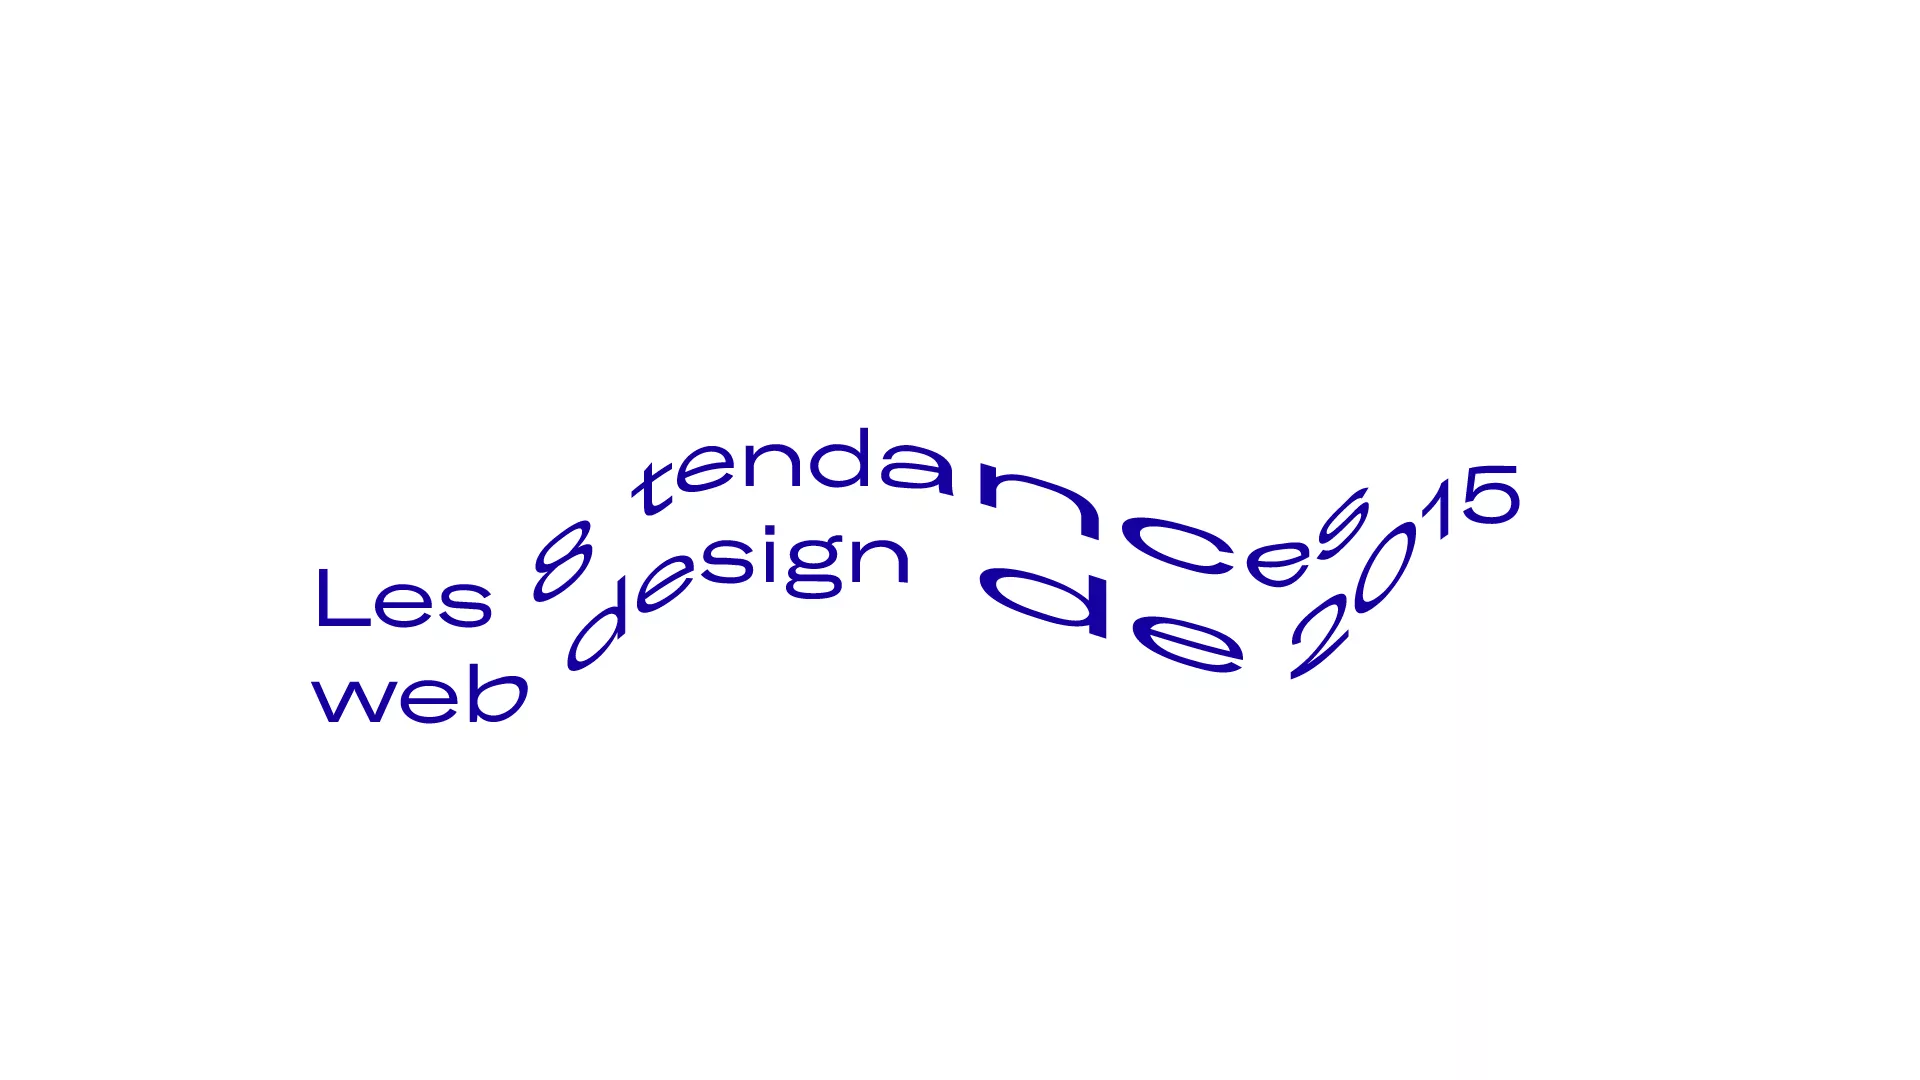 Les 8 tendances web design de 2015